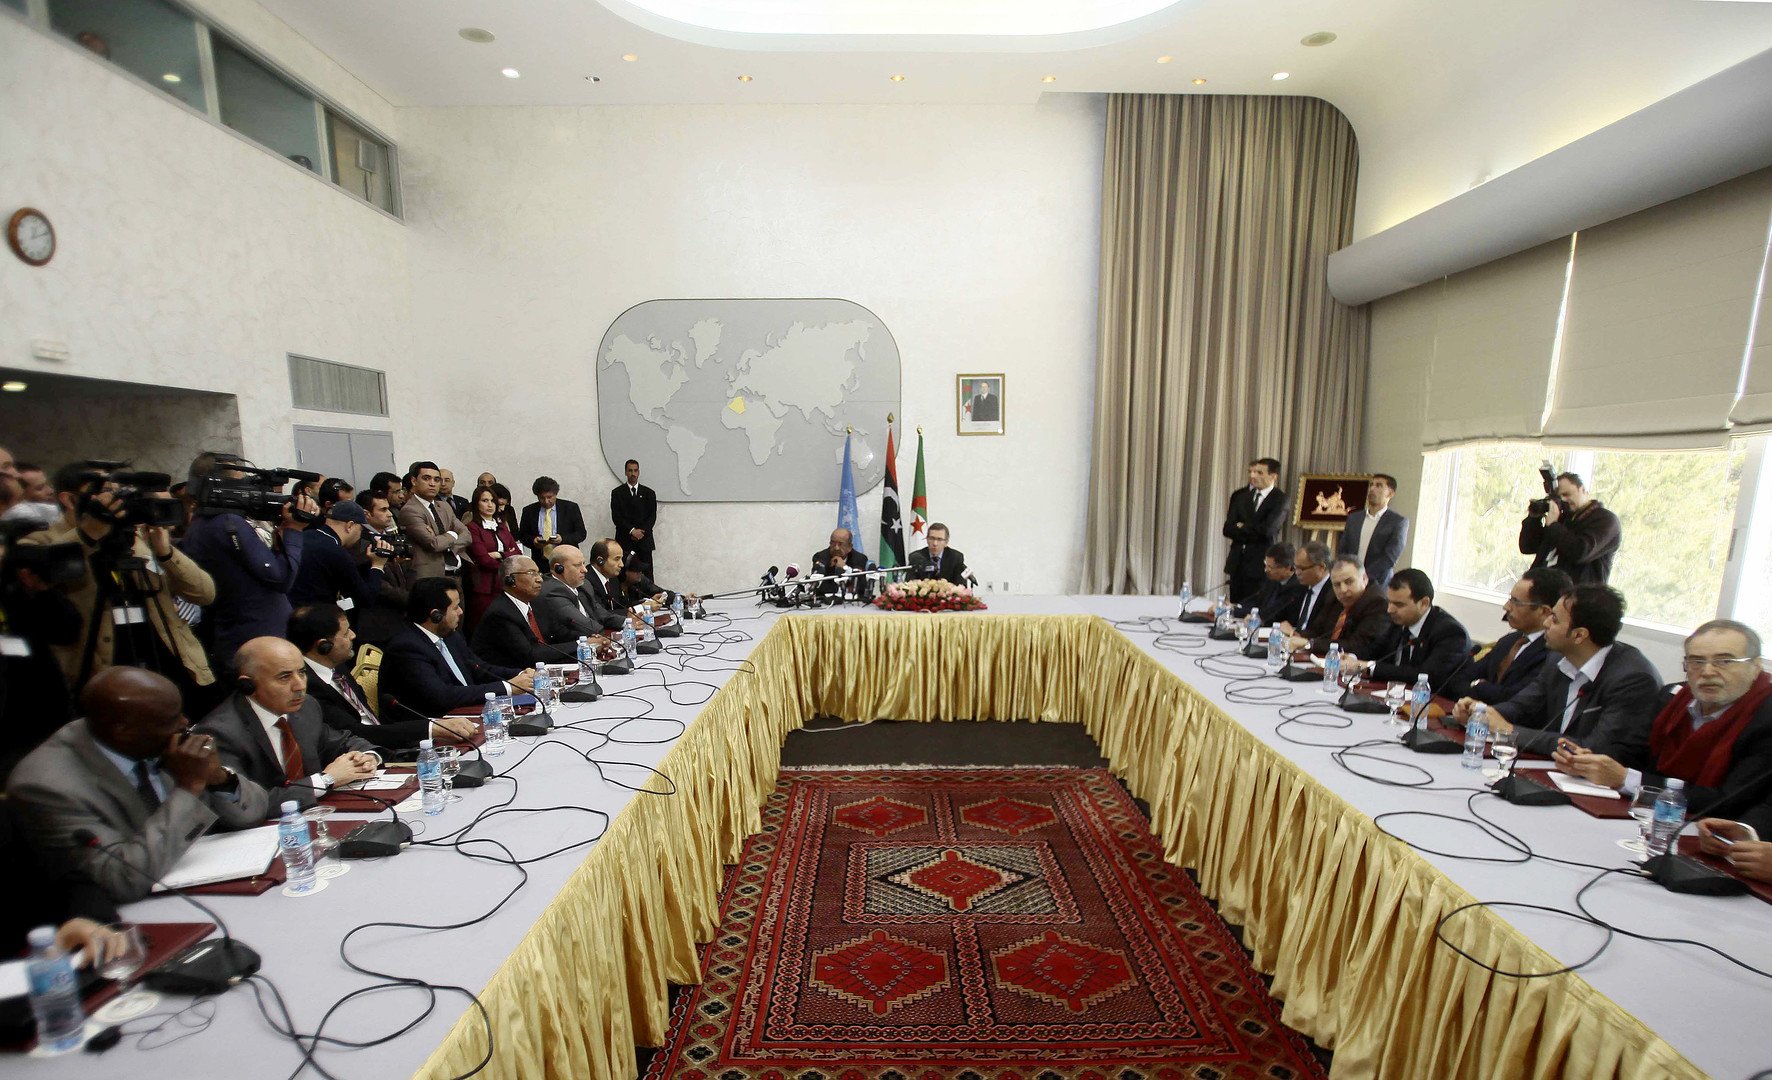 مجلس الأمن يهدد بمعاقبة معرقلي التسوية السياسية بليبيا